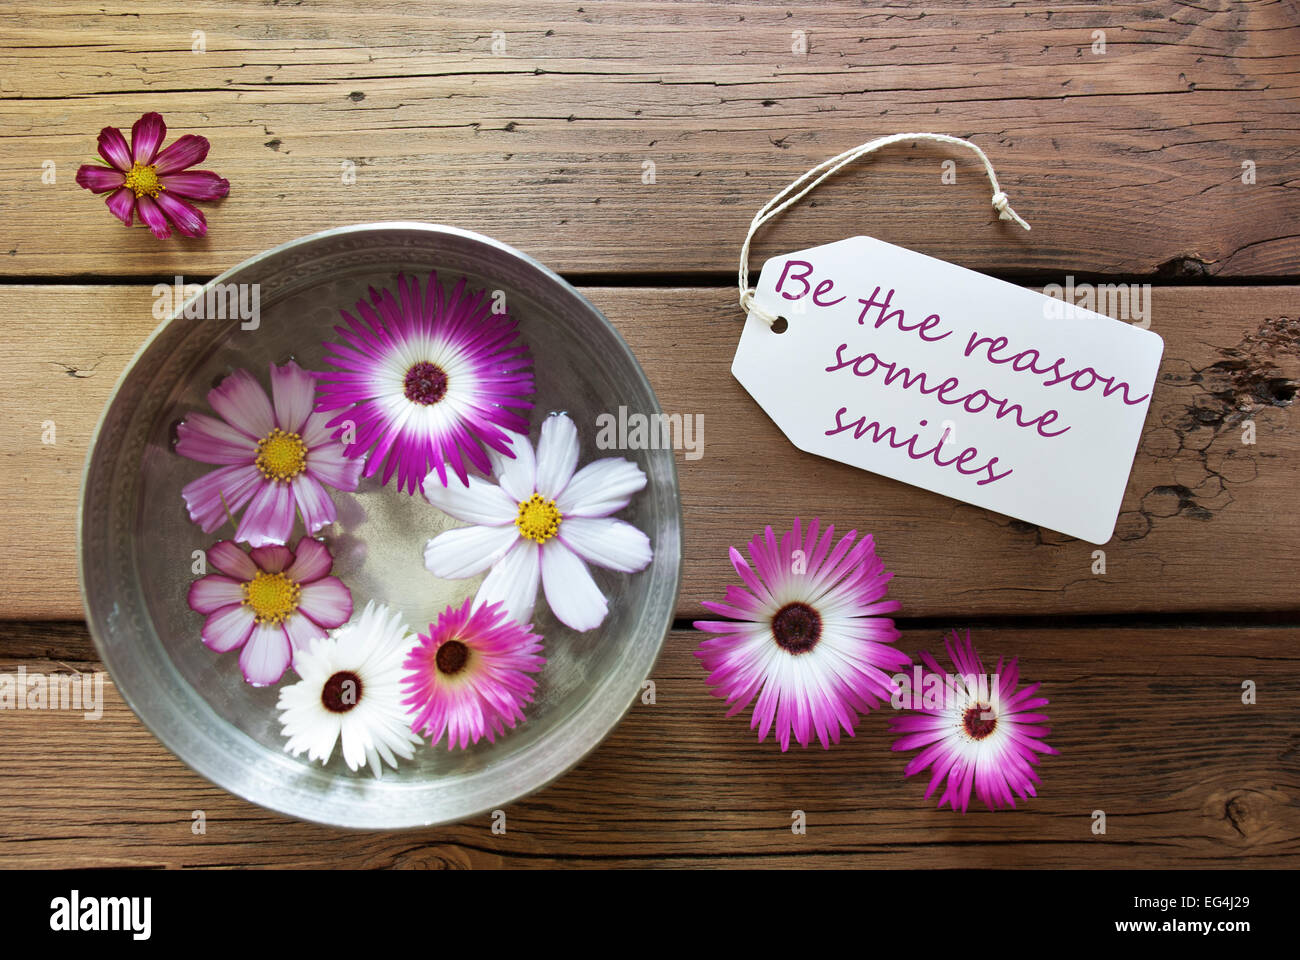 Silberschale mit Etikett mit Leben-Zitat werden der Grund, warum, den jemand lächelt, mit einer lila und weißen Blüten auf hölzernen Hintergrund V Stockfoto